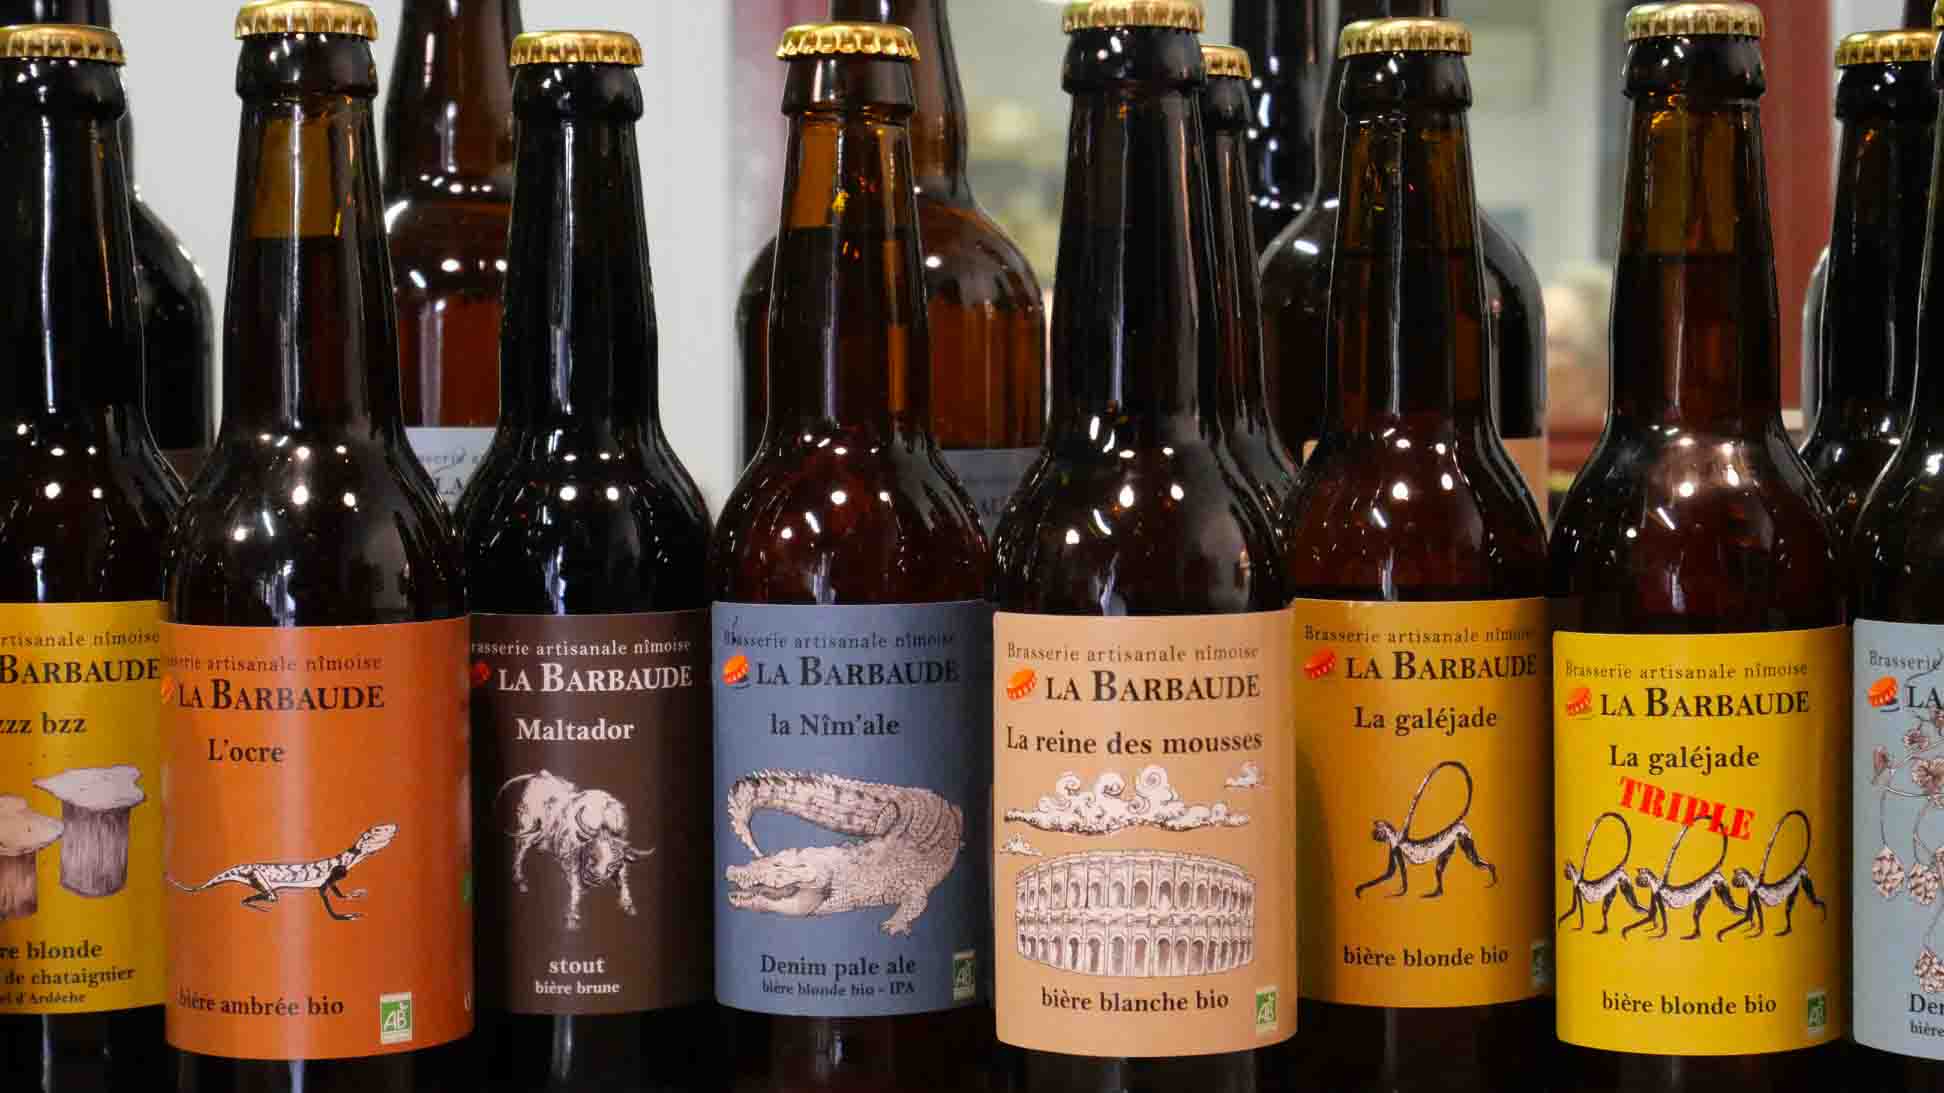 bieres-de-nimes-bio-la-barbaude-arles-caviste